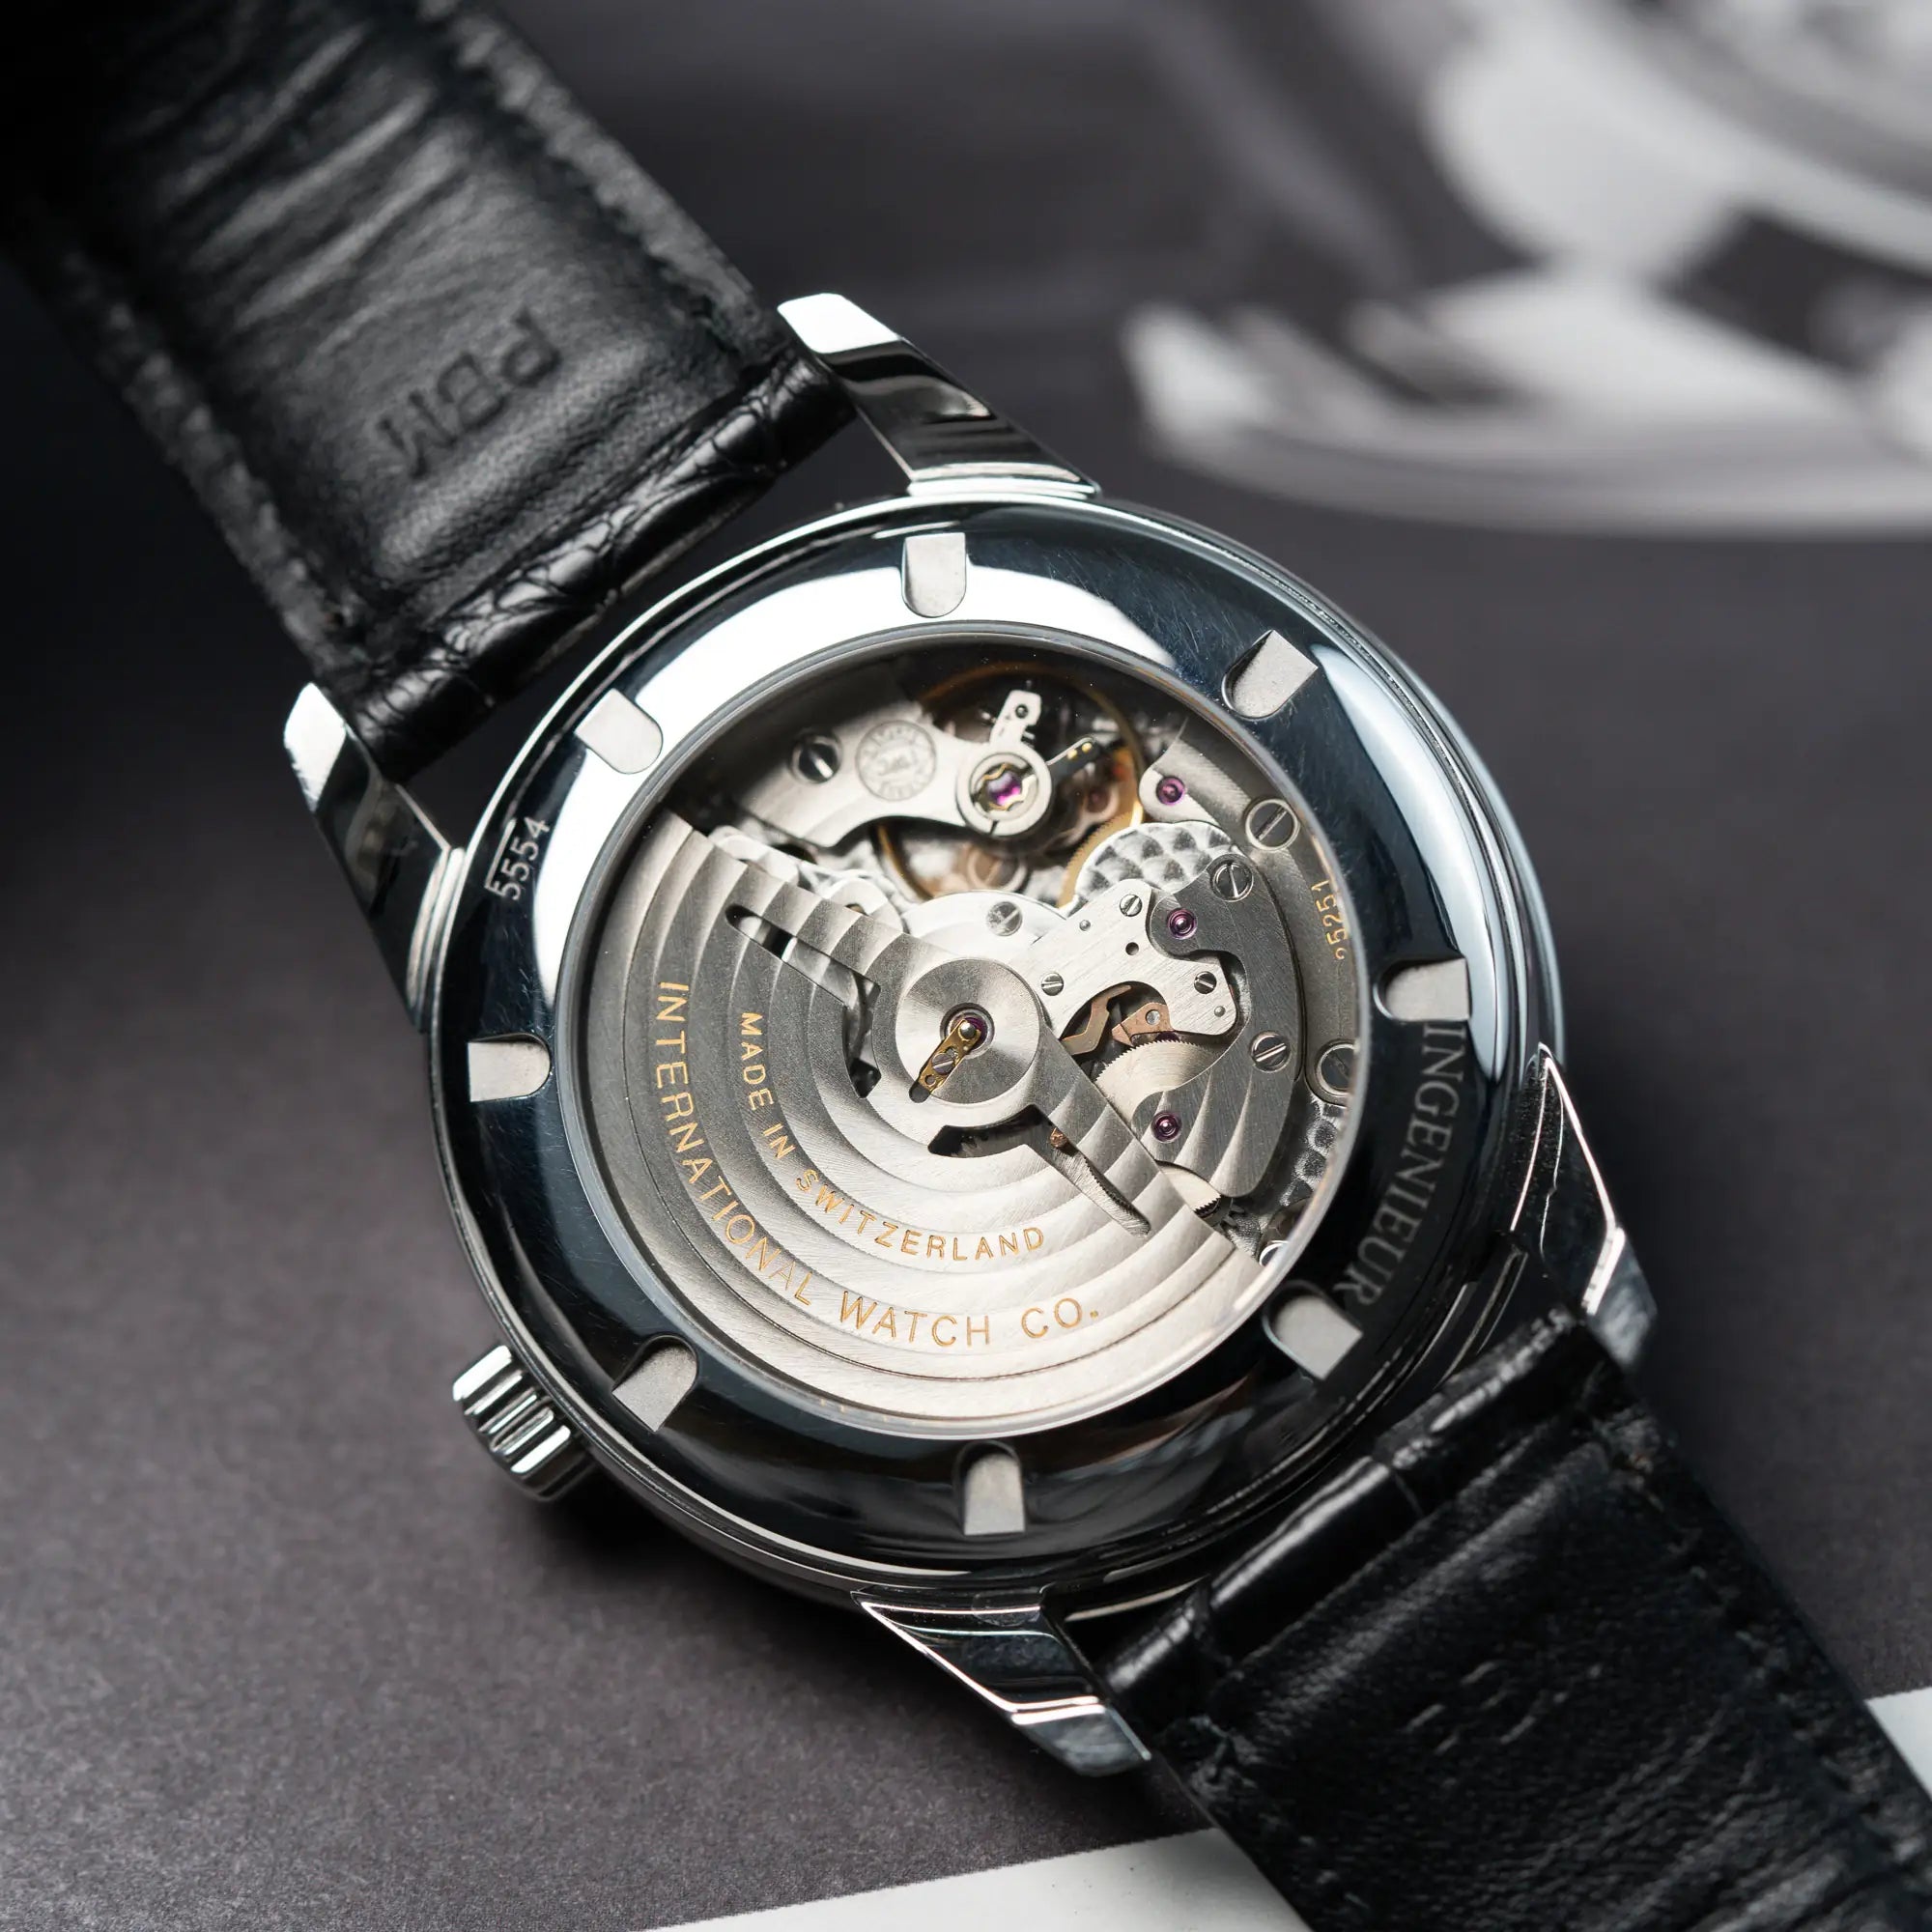 Detailaufnahme der IWC Schaffhausen Uhr "Ingenieur" mit der Referenz IW323301